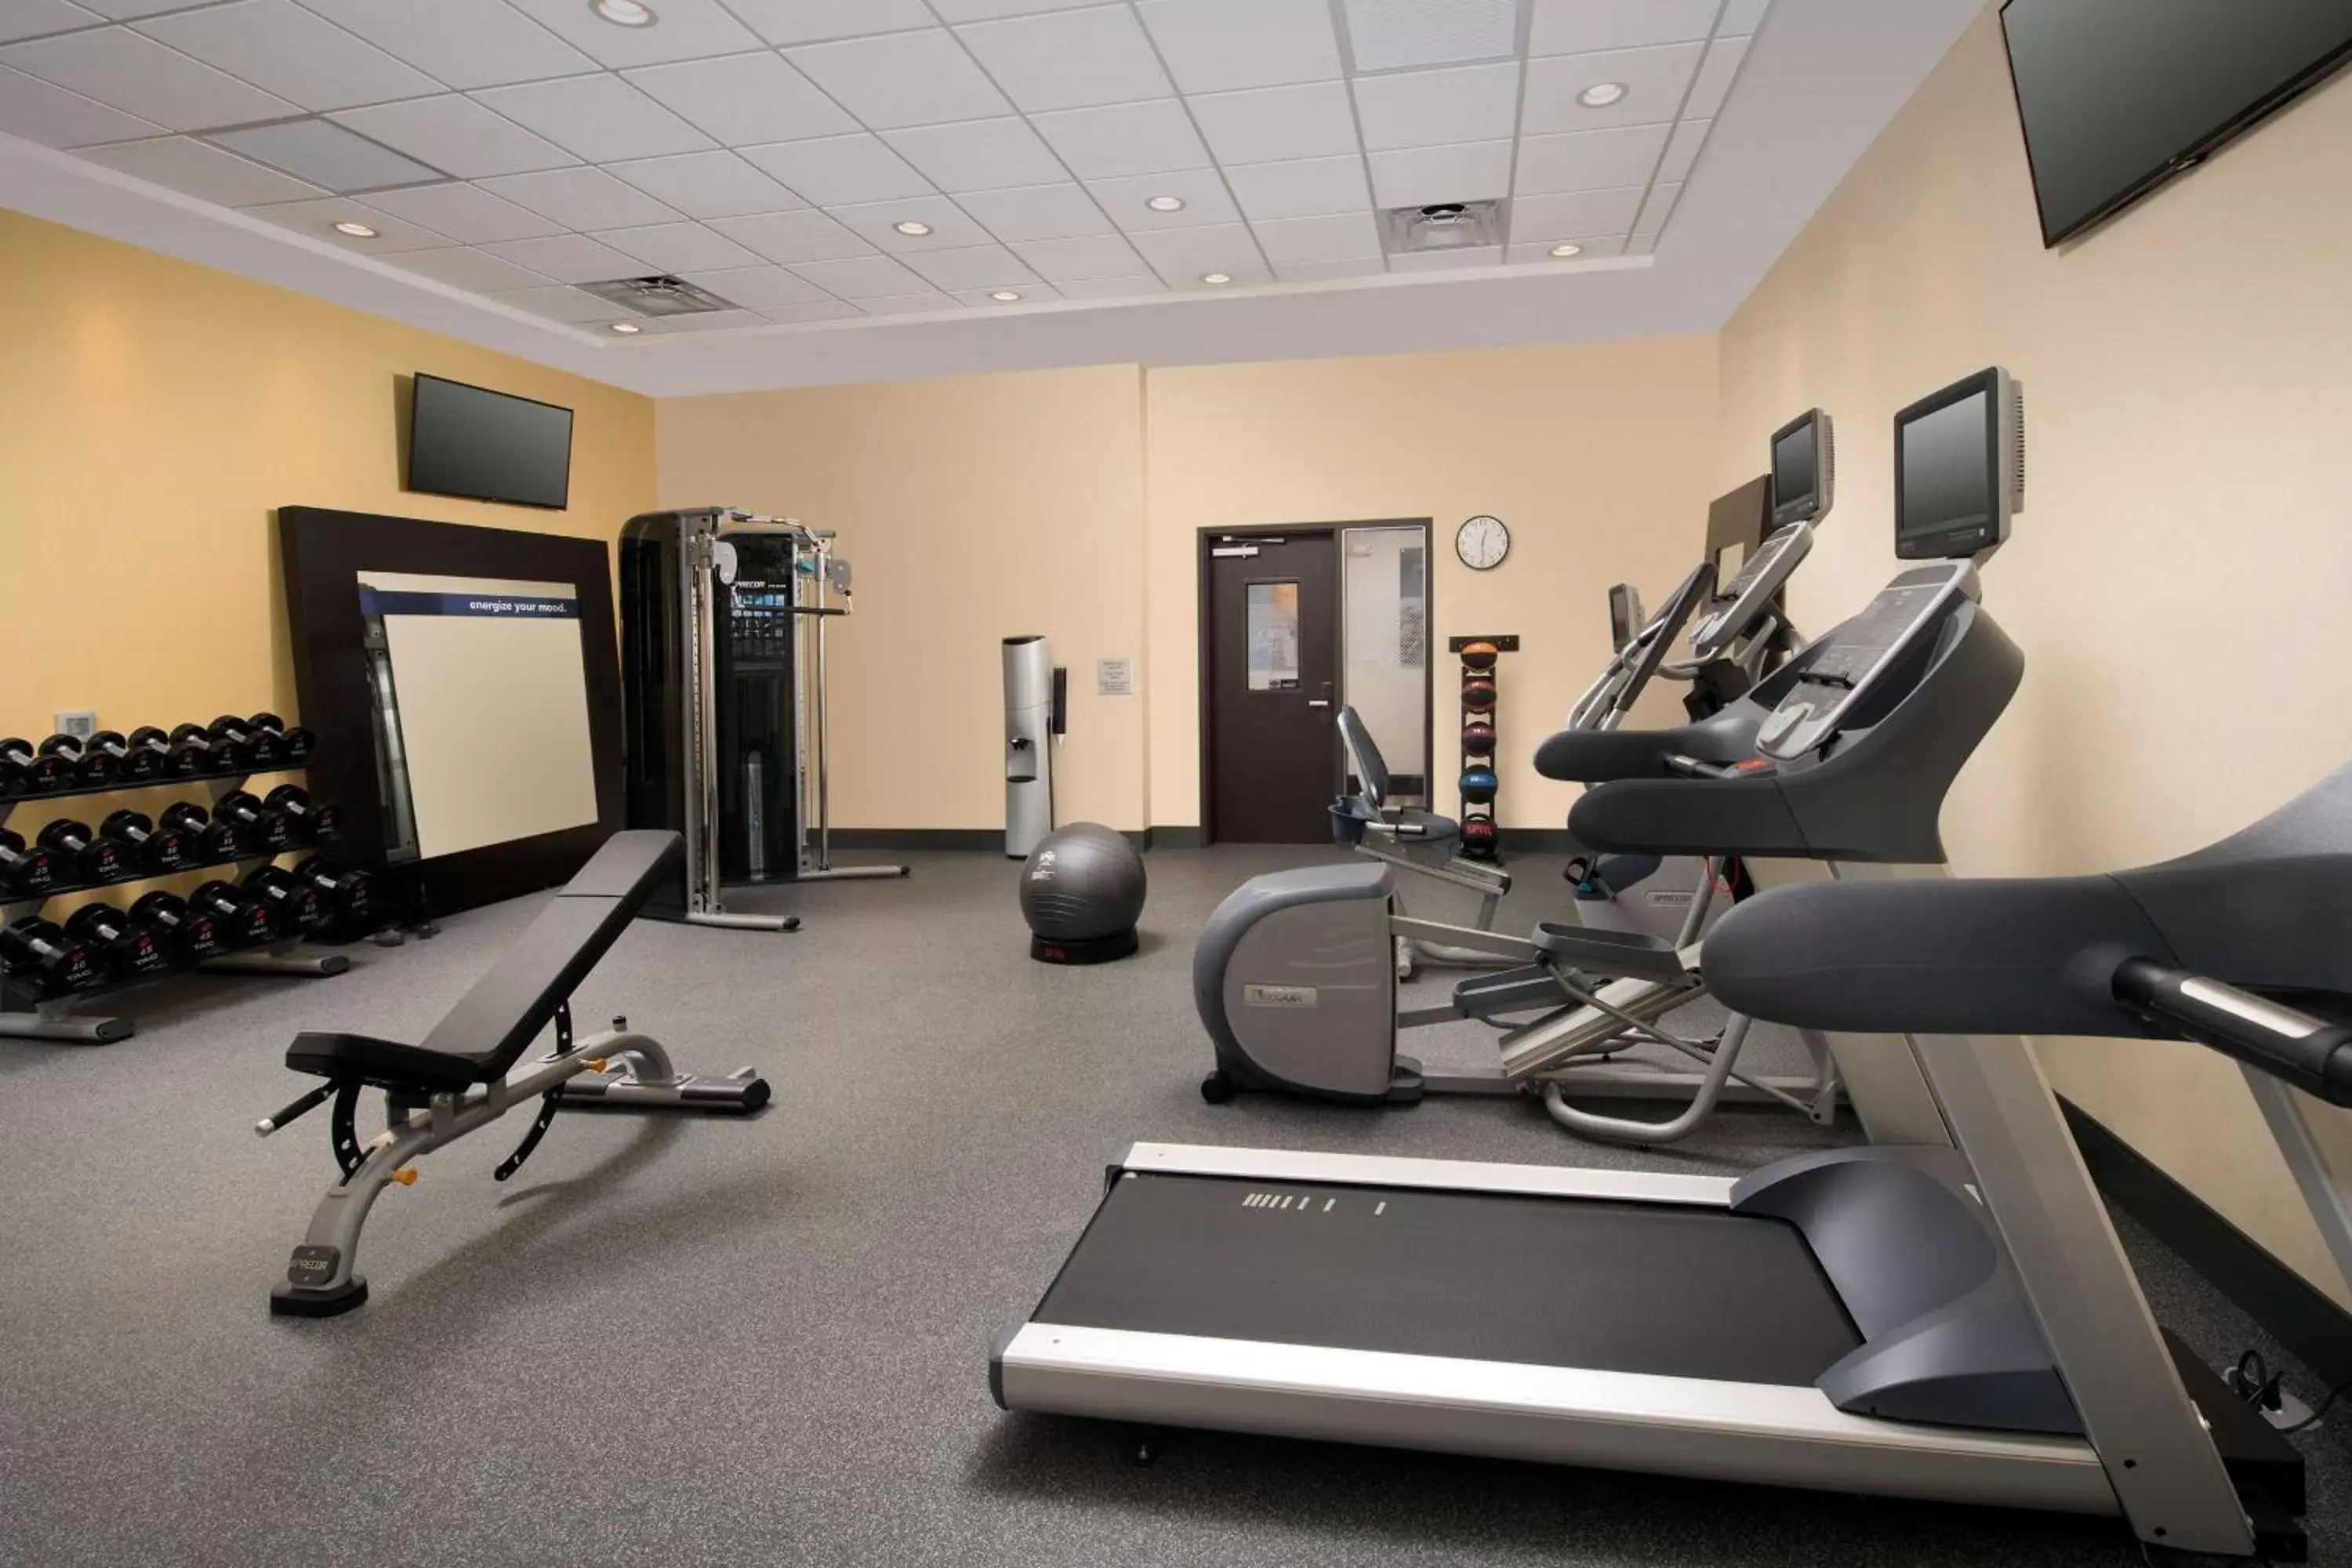 Fitness centre/facilities, Fitness Center/Facilities in Hampton Inn Huntsville/Village of Providence, AL